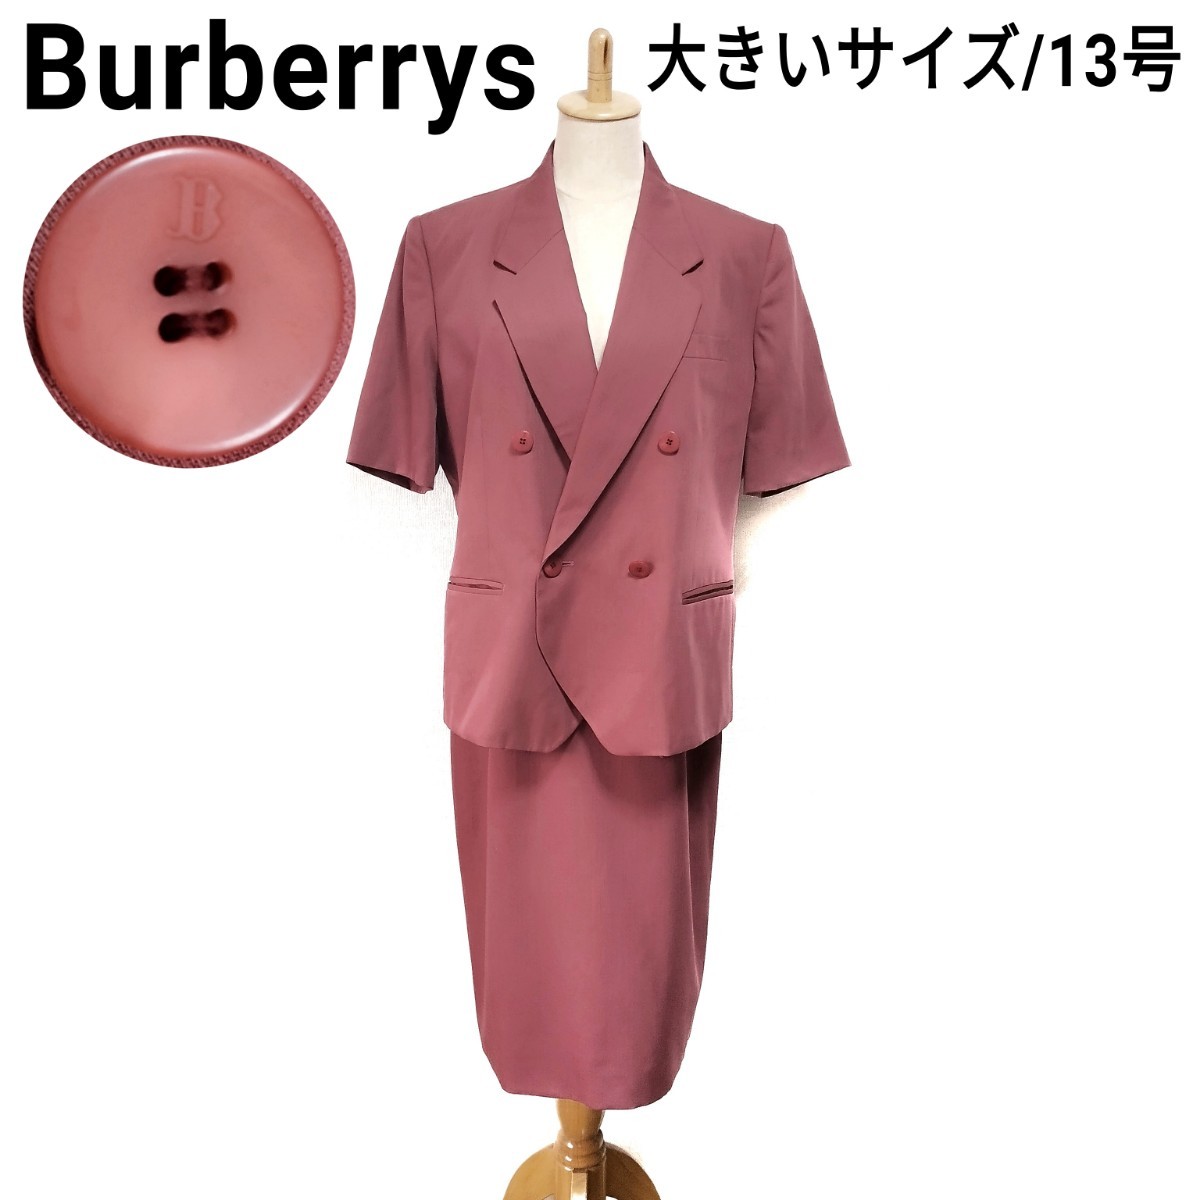 美品 Burberrys バーバリーズ 半袖スカートスーツ セットアップ ロゴボタン ダブル ピンク レディース 大きいサイズ 13号 XL ヴィンテージ